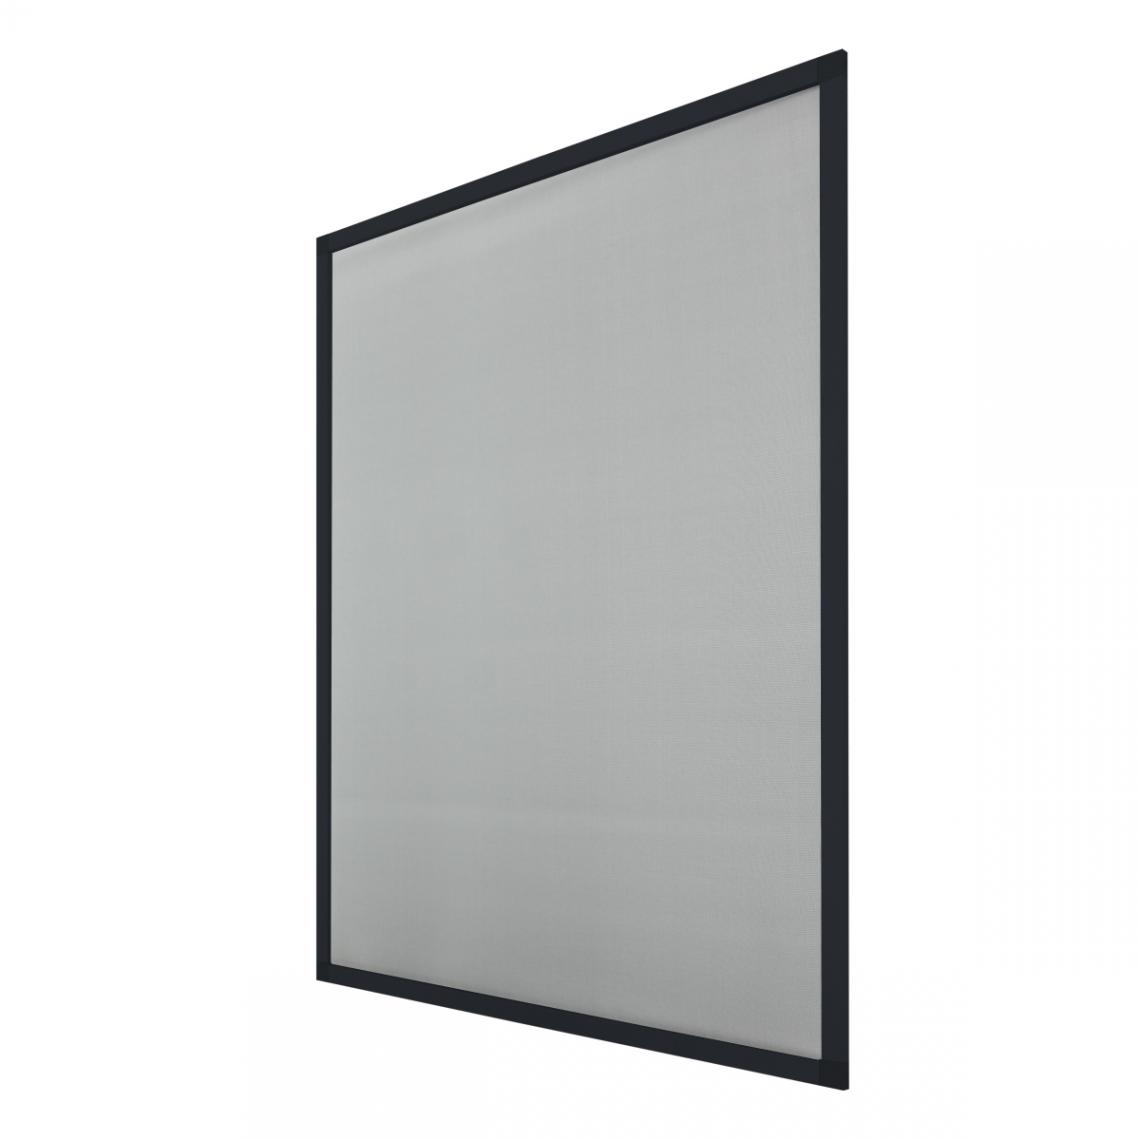 Ecd Germany - 4 x moustiquaire cadre en aluminium anthracite 80 x 100 cm - Moustiquaire Fenêtre